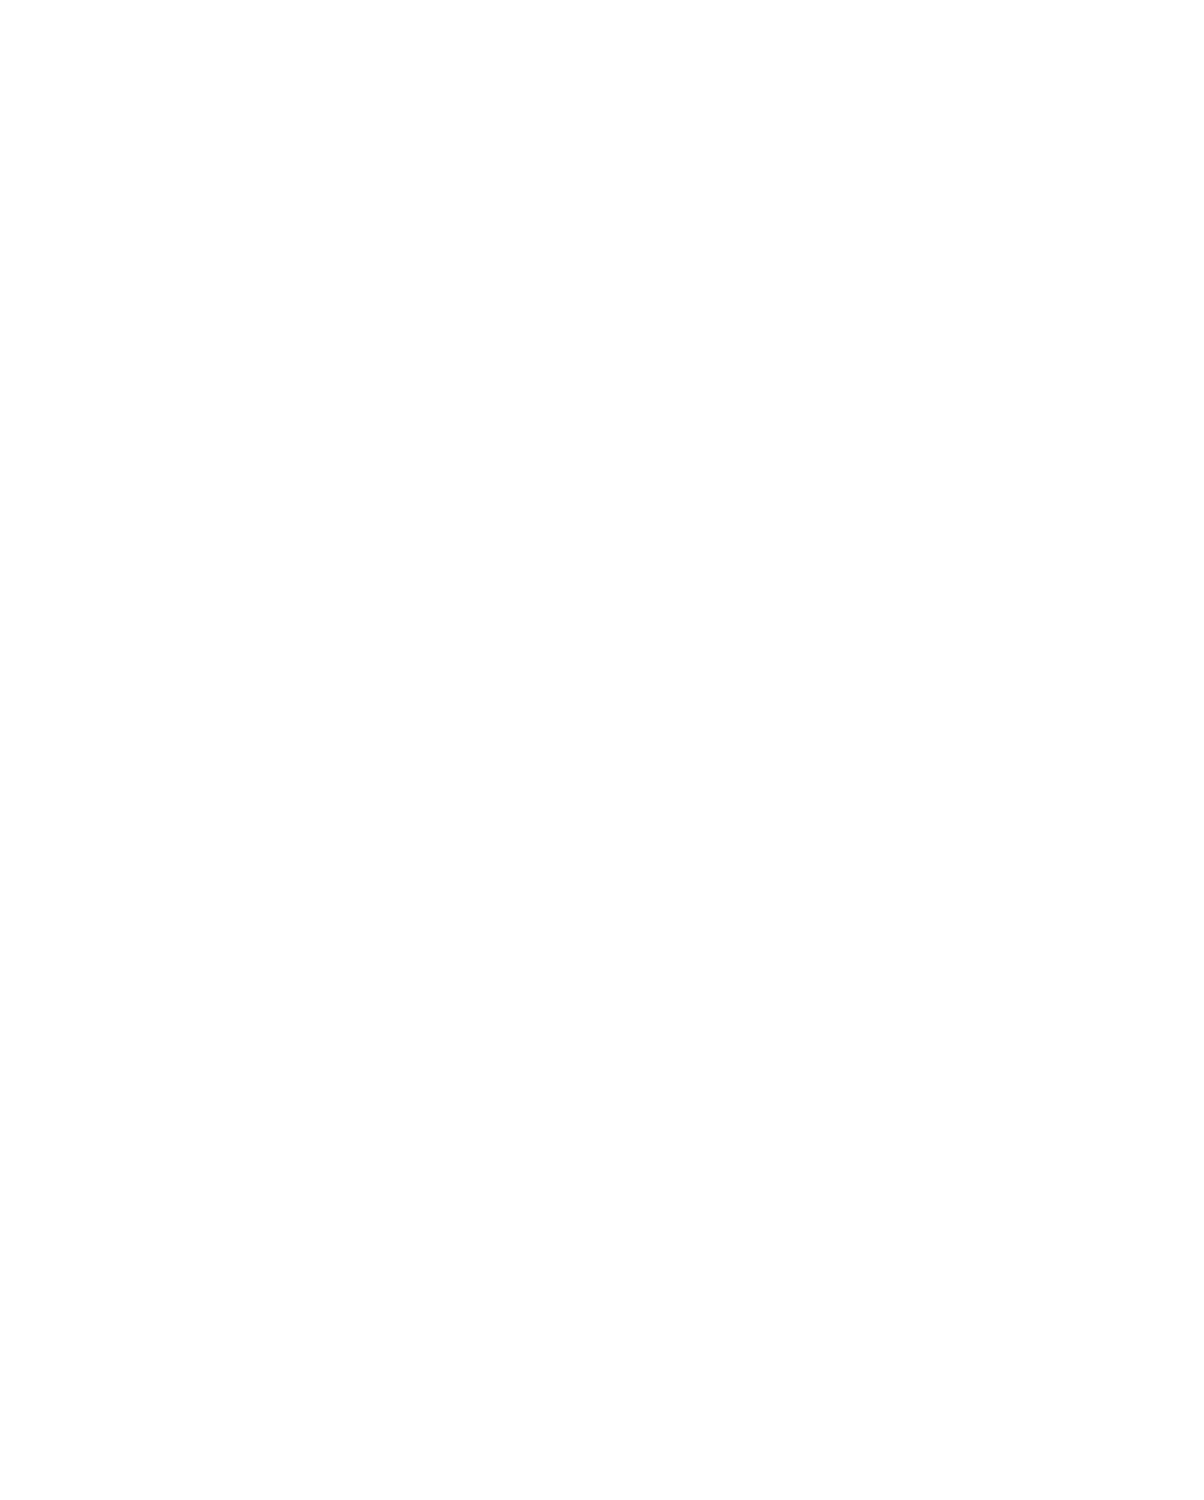 GlobalData logo for dark backgrounds (transparent PNG)